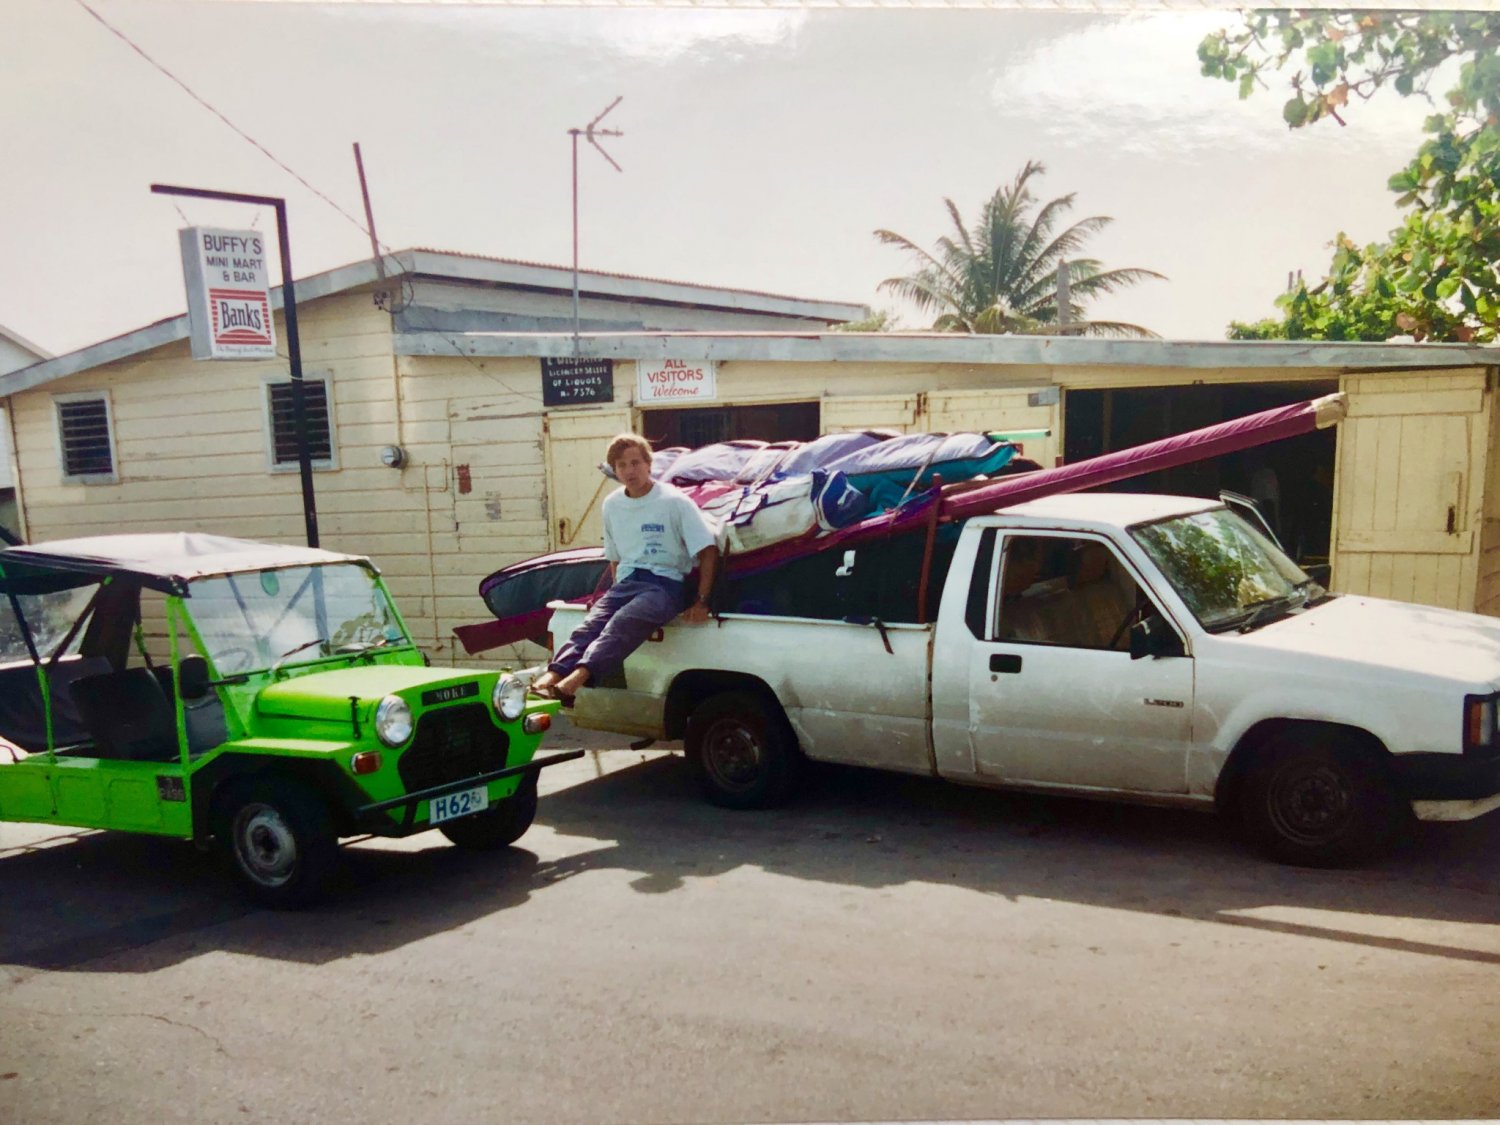 24.12.1993 - Barbados